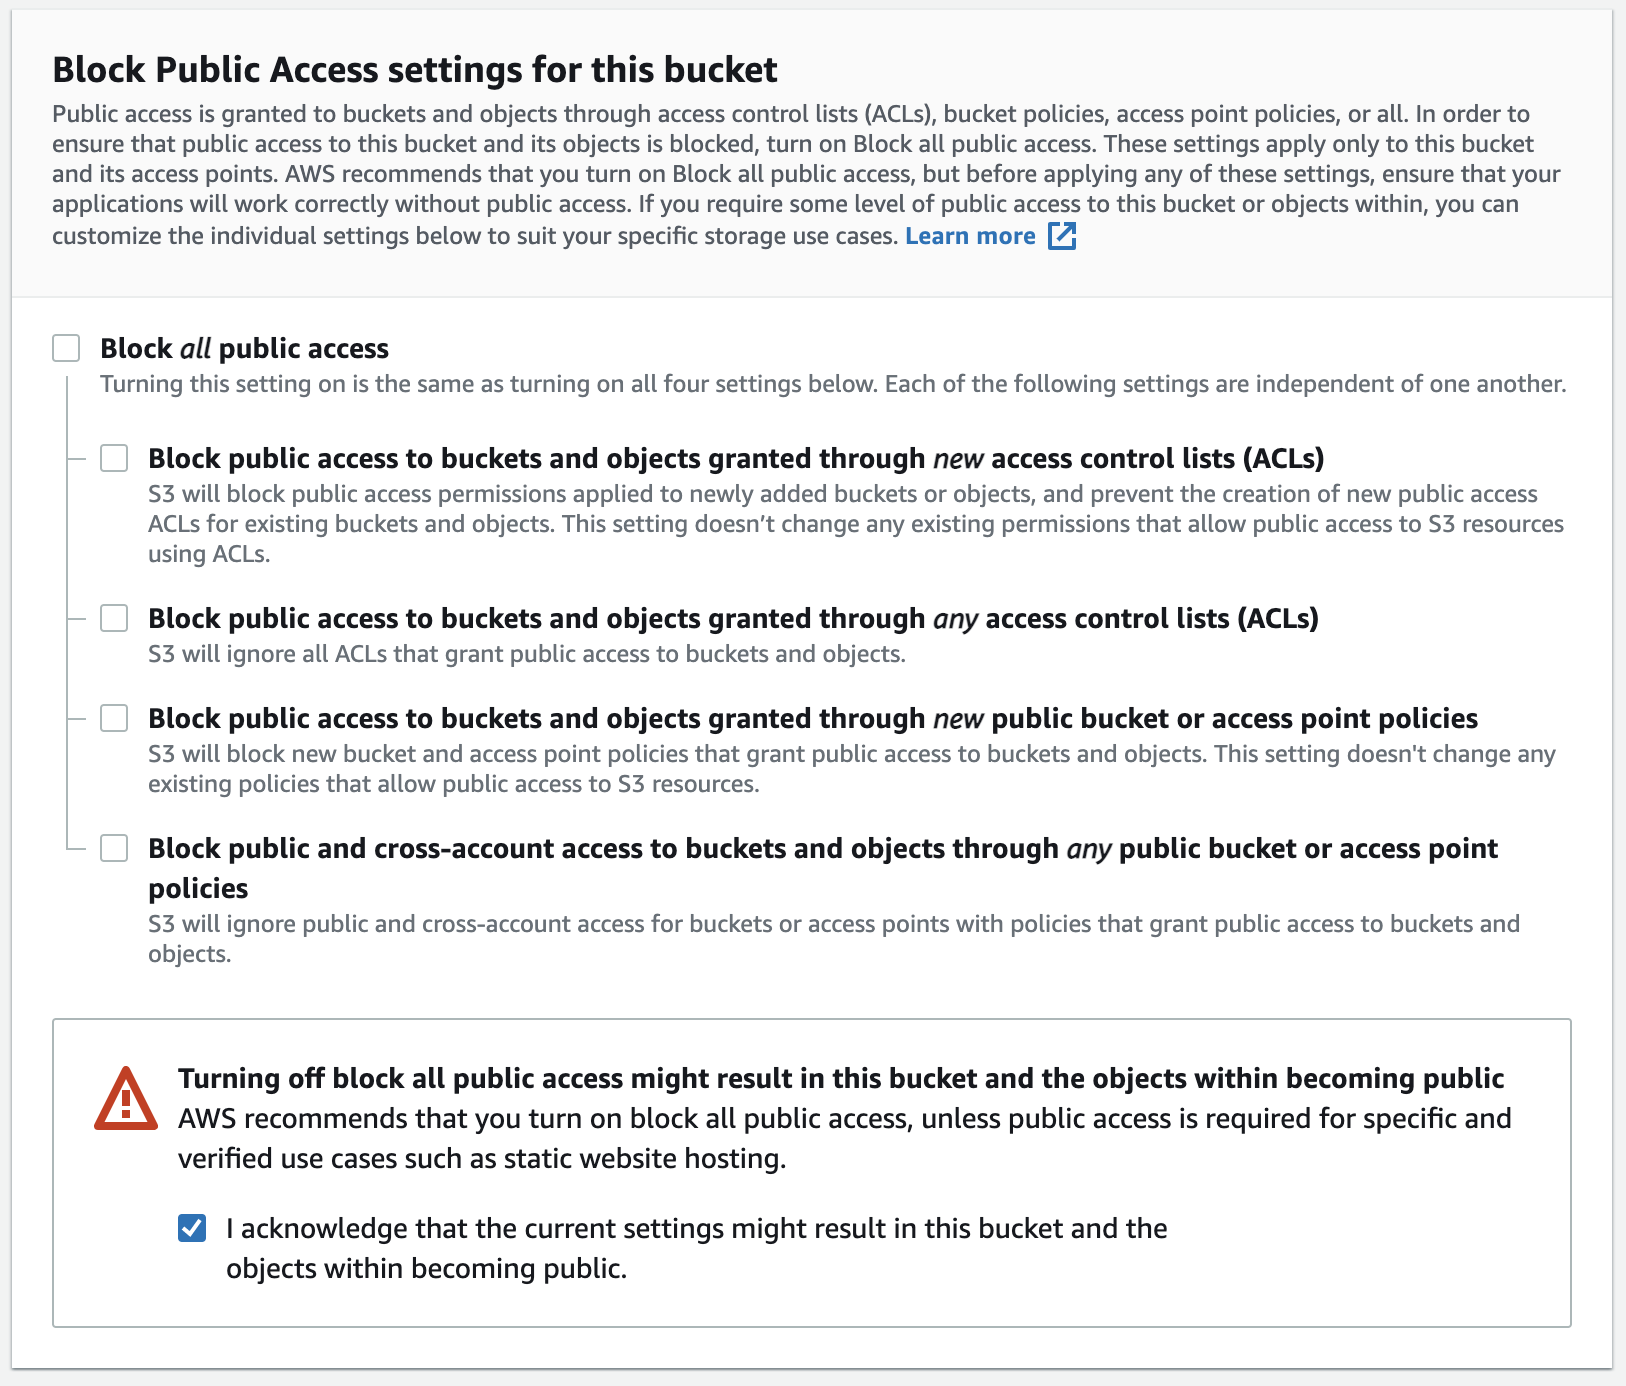 Public access settings